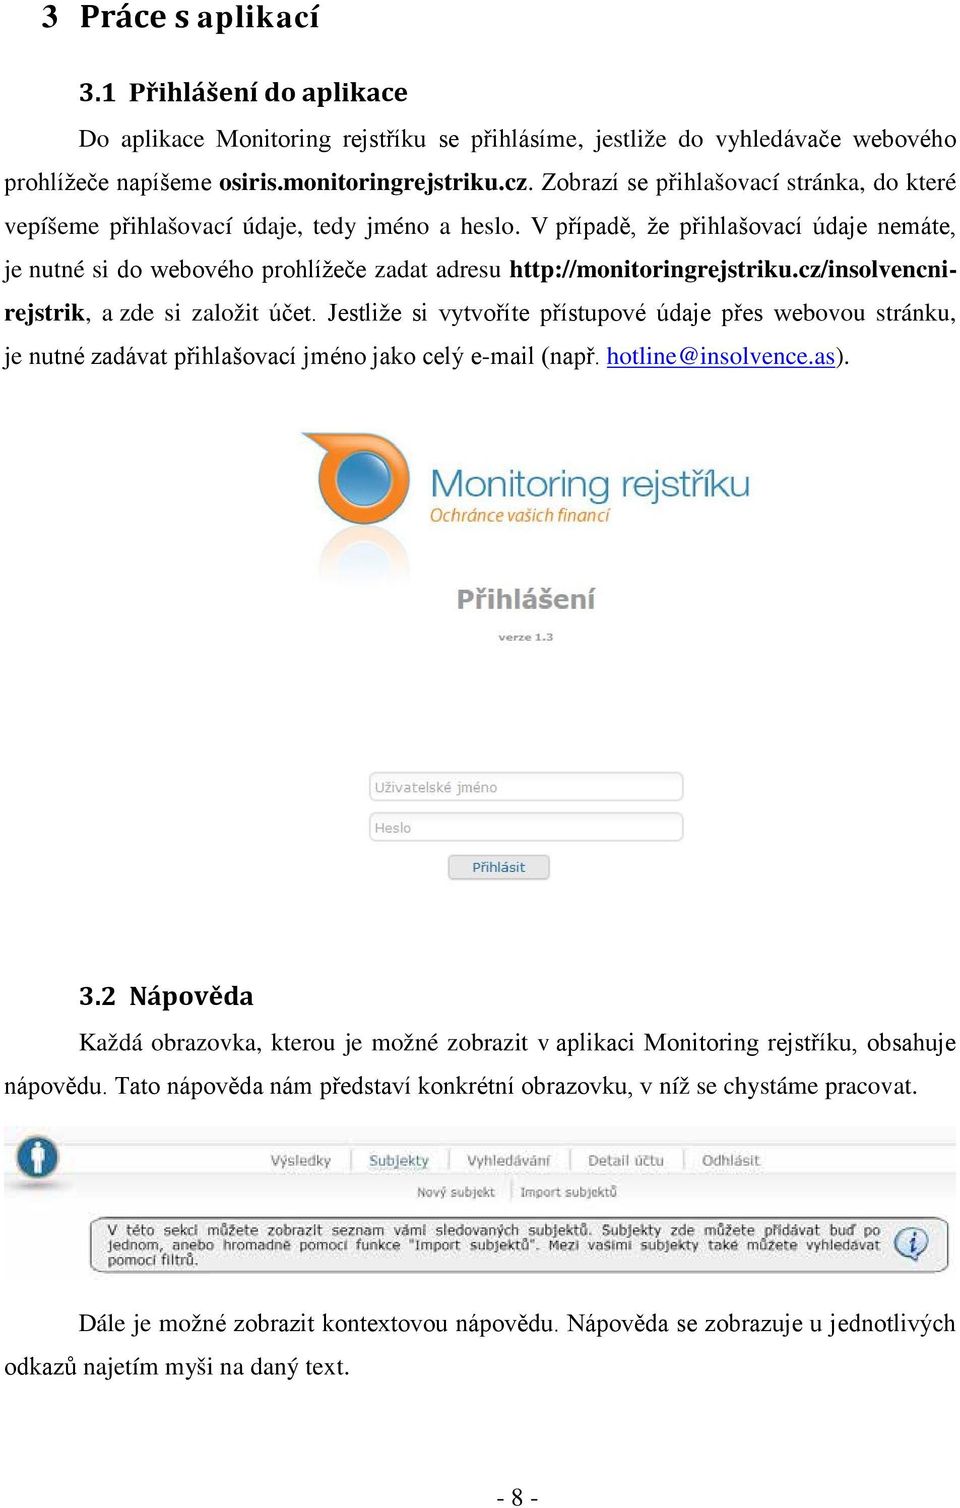 V případě, že přihlašovací údaje nemáte, je nutné si do webového prohlížeče zadat adresu http://monitoringrejstriku.cz/insolvencnirejstrik, a zde si založit účet.